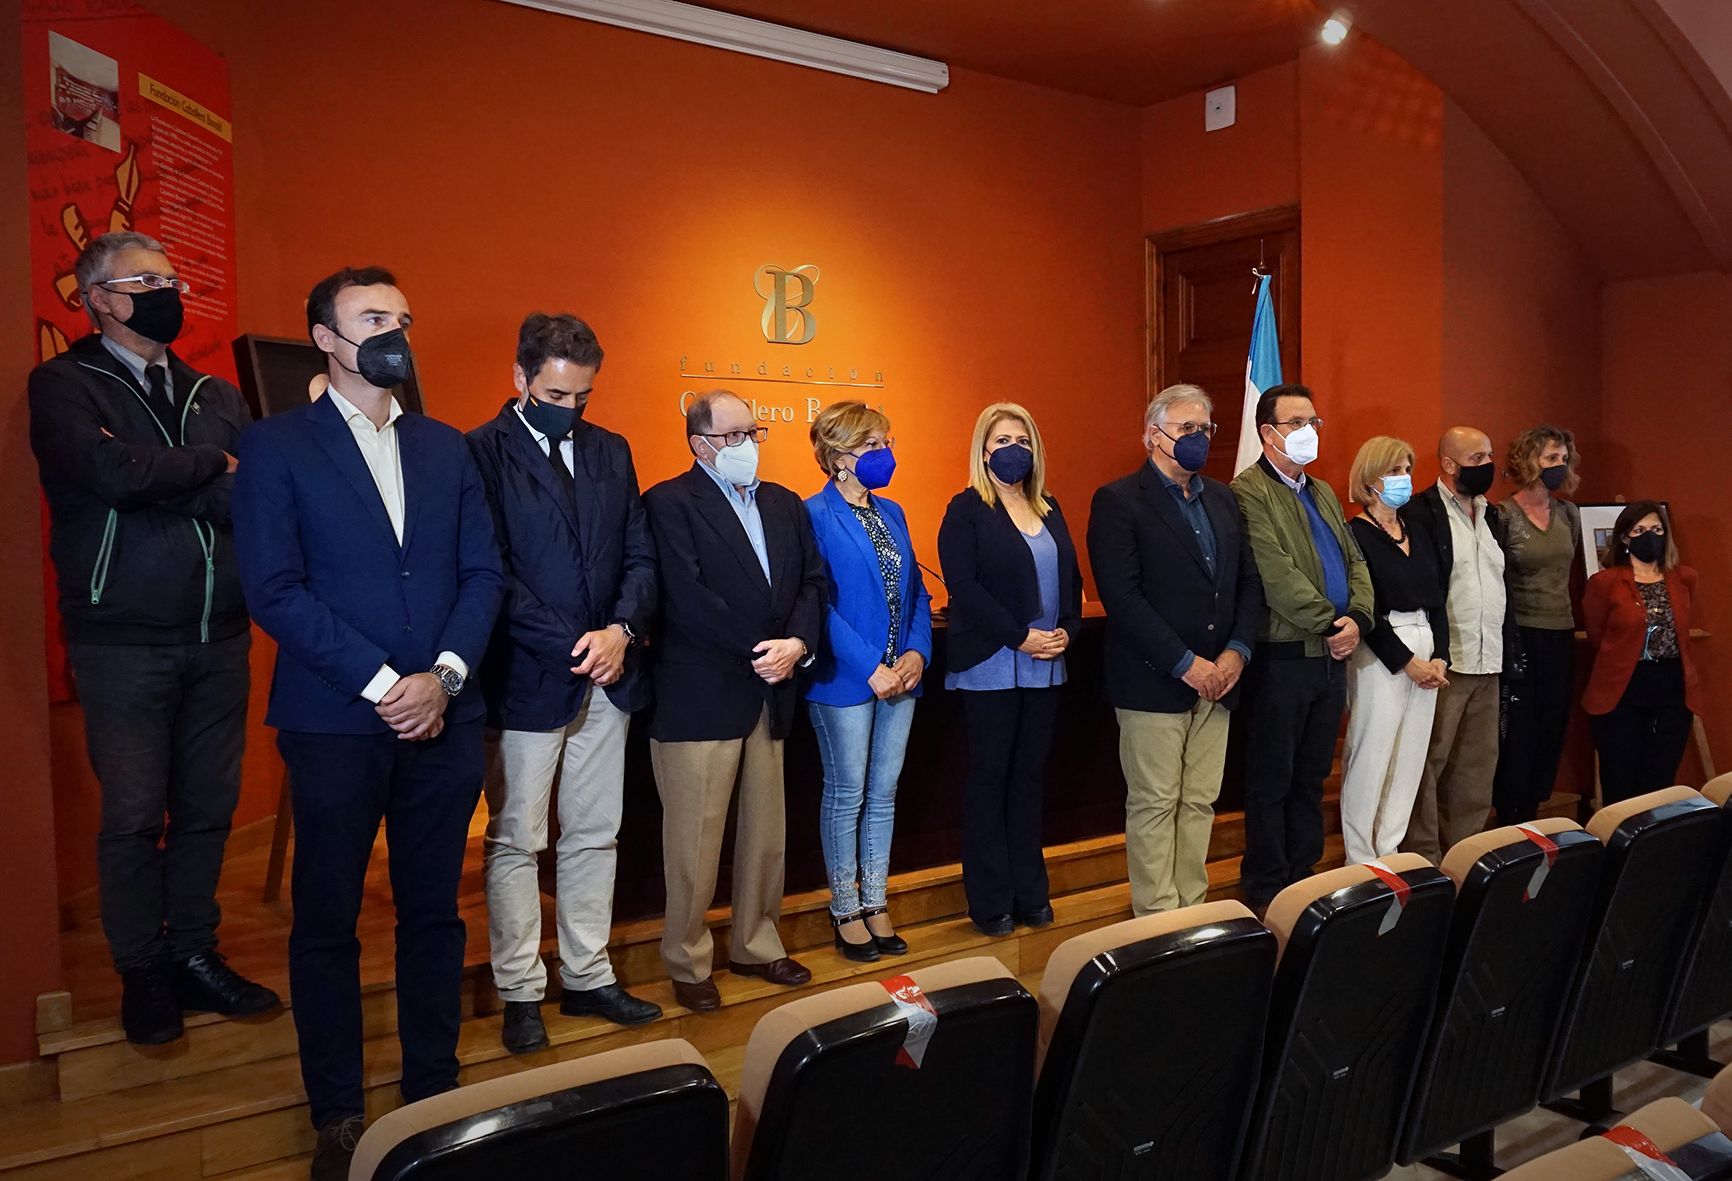 Parte de la Corporación municipal, con la alcaldesa Mamen Sánchez al frente, además de la diputada y exalcaldesa García-Pelayo, en el minuto de silencio en la Fundación Caballero Bonald, en Jerez este lunes.